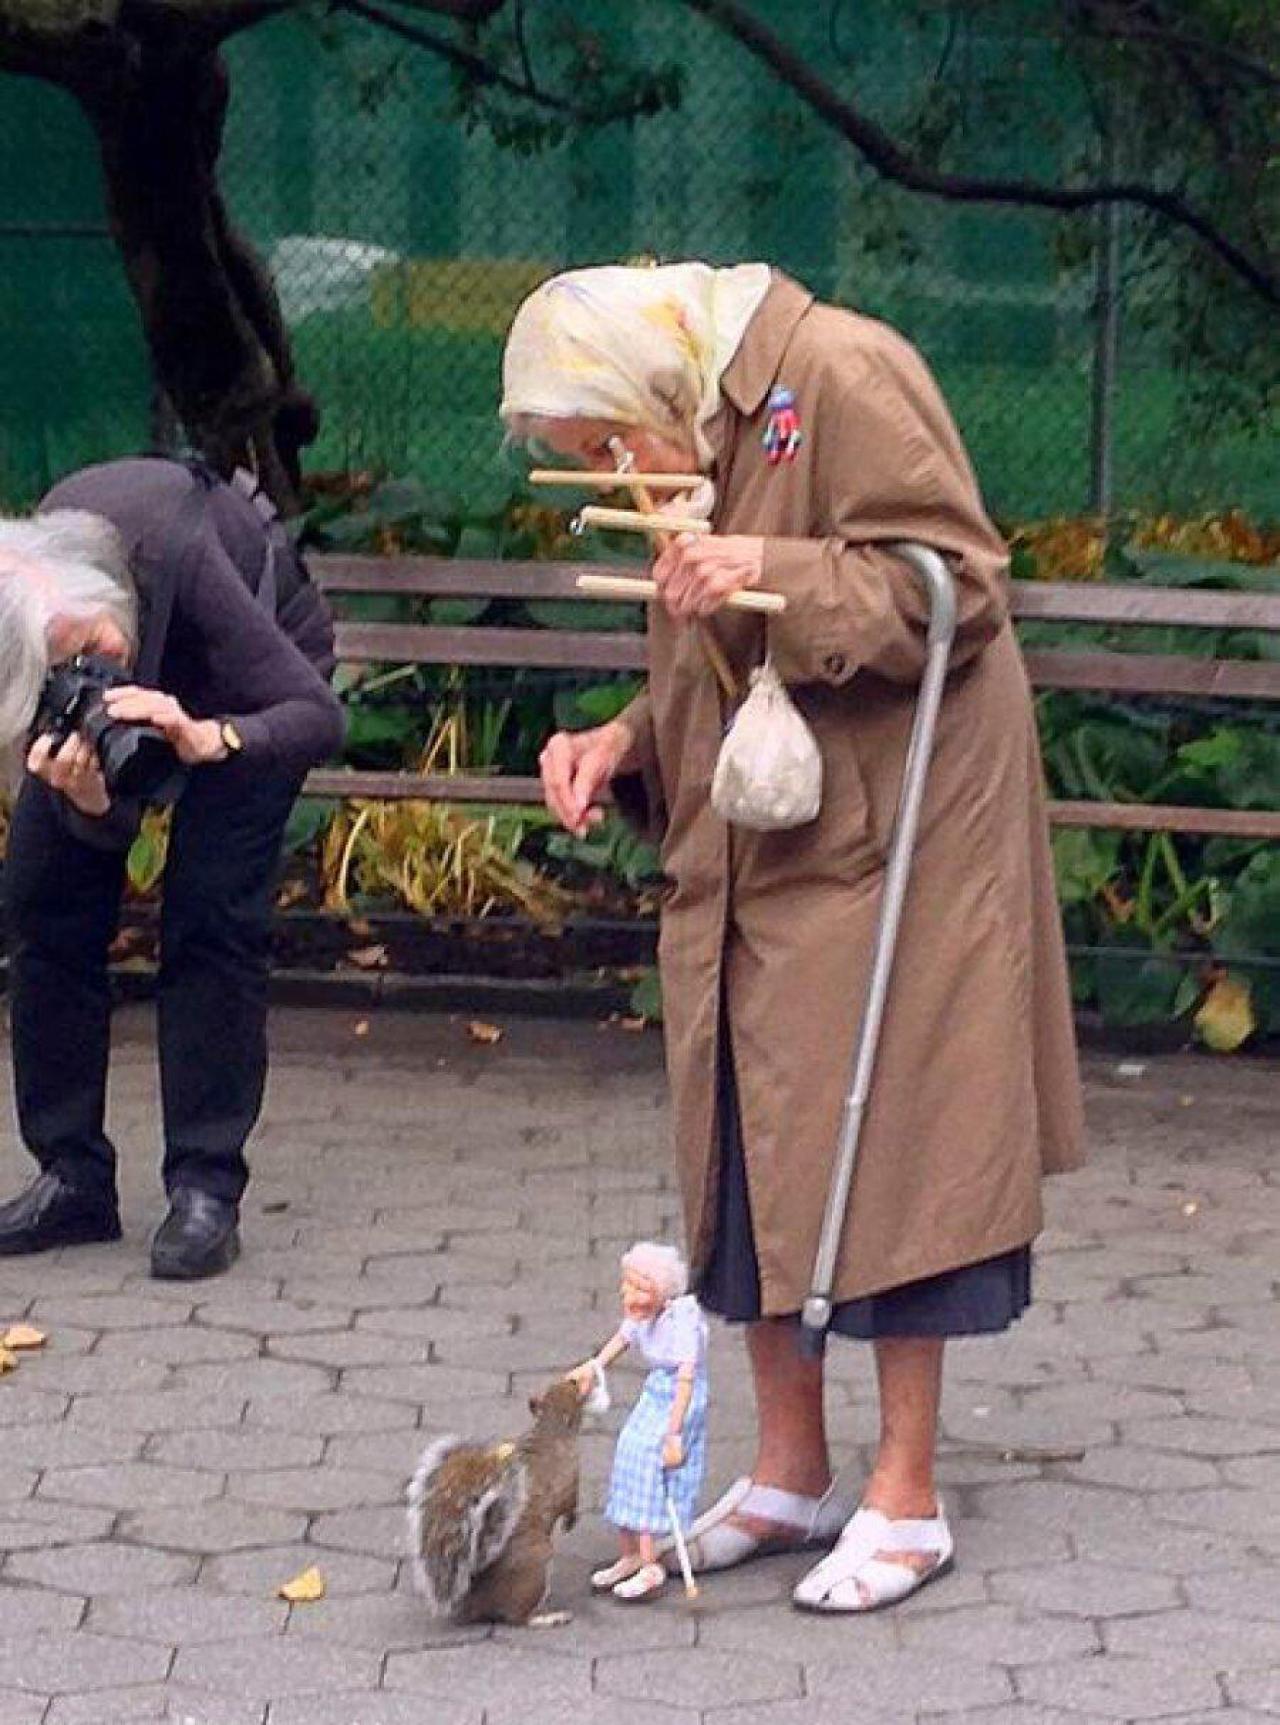 老奶奶正操作提线人偶给松鼠喂食的温暖瞬间